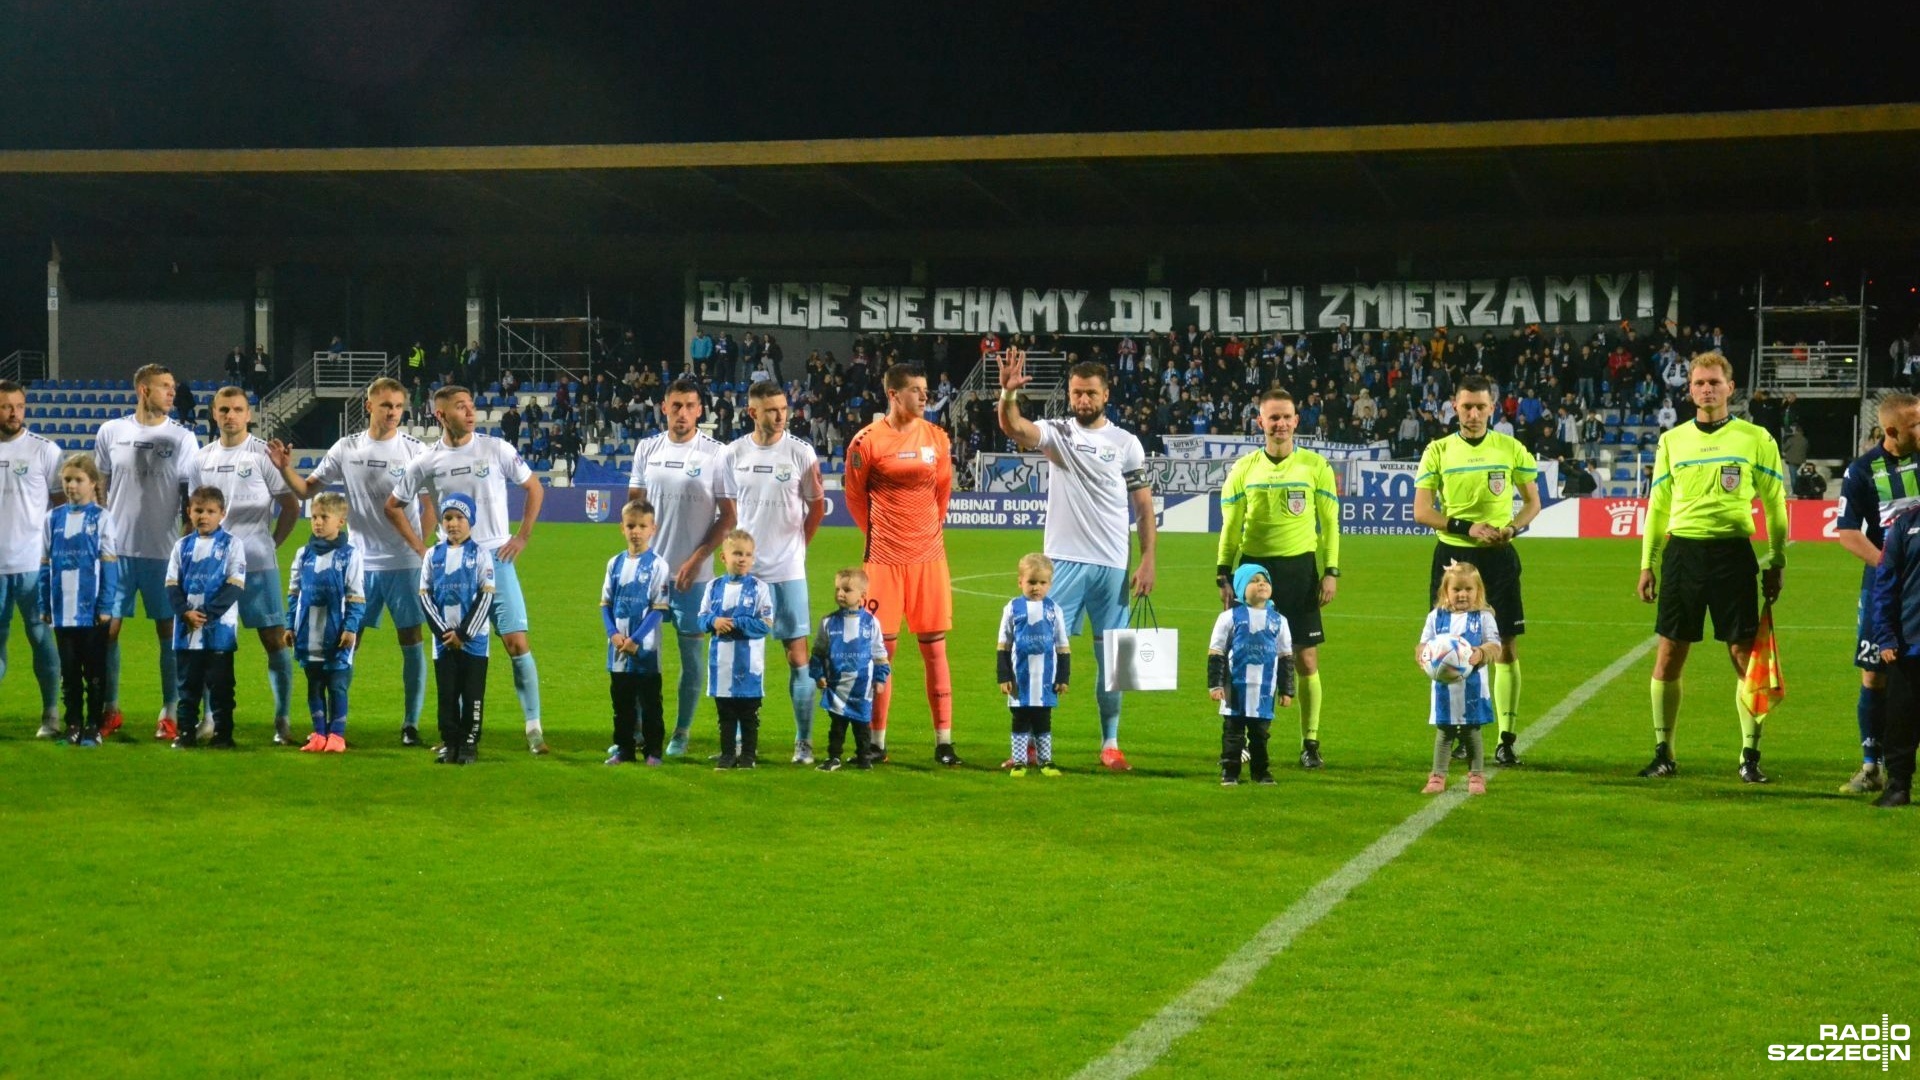 Piłkarze Kotwicy Kołobrzeg zremisowali na wyjeździe z Pogonią Siedlce 0:0 w 2 lidze. To trzeci z rzędu mecz bez zwycięstwa beniaminka znad morza.